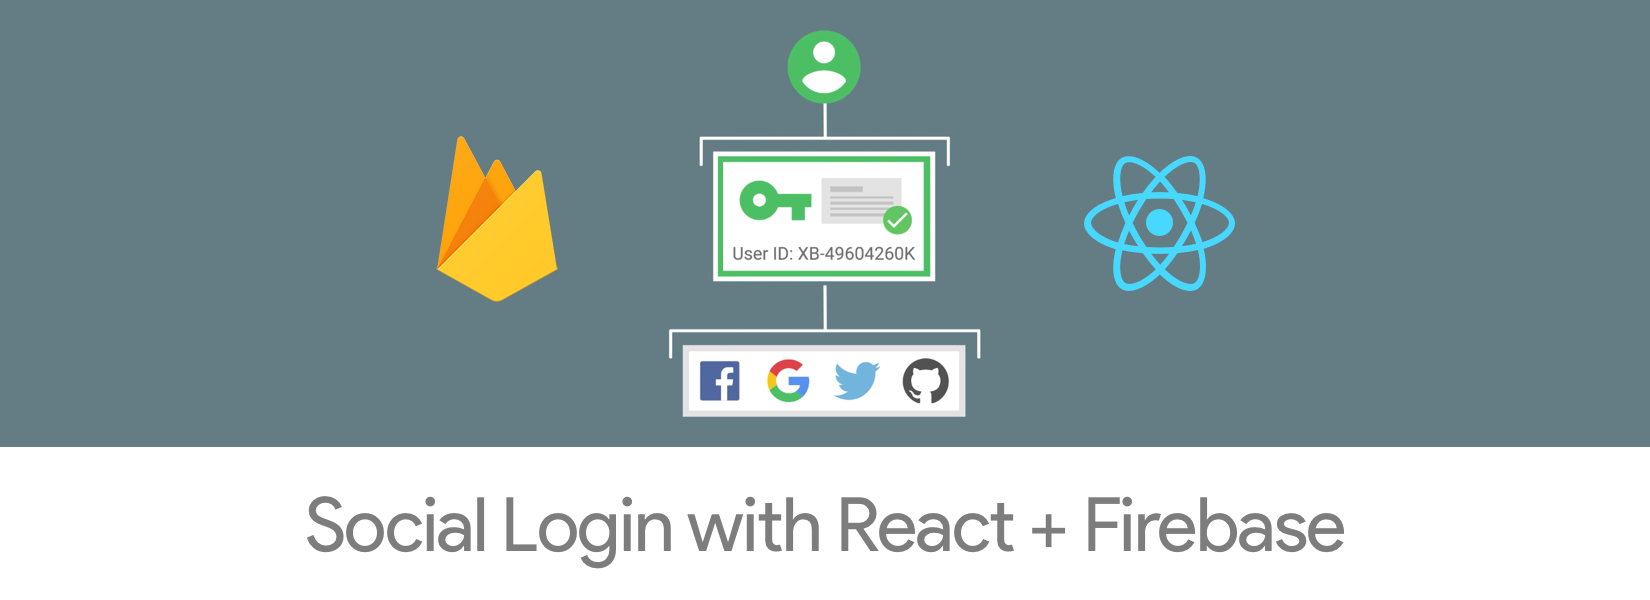 Firebase Social Login With React Native